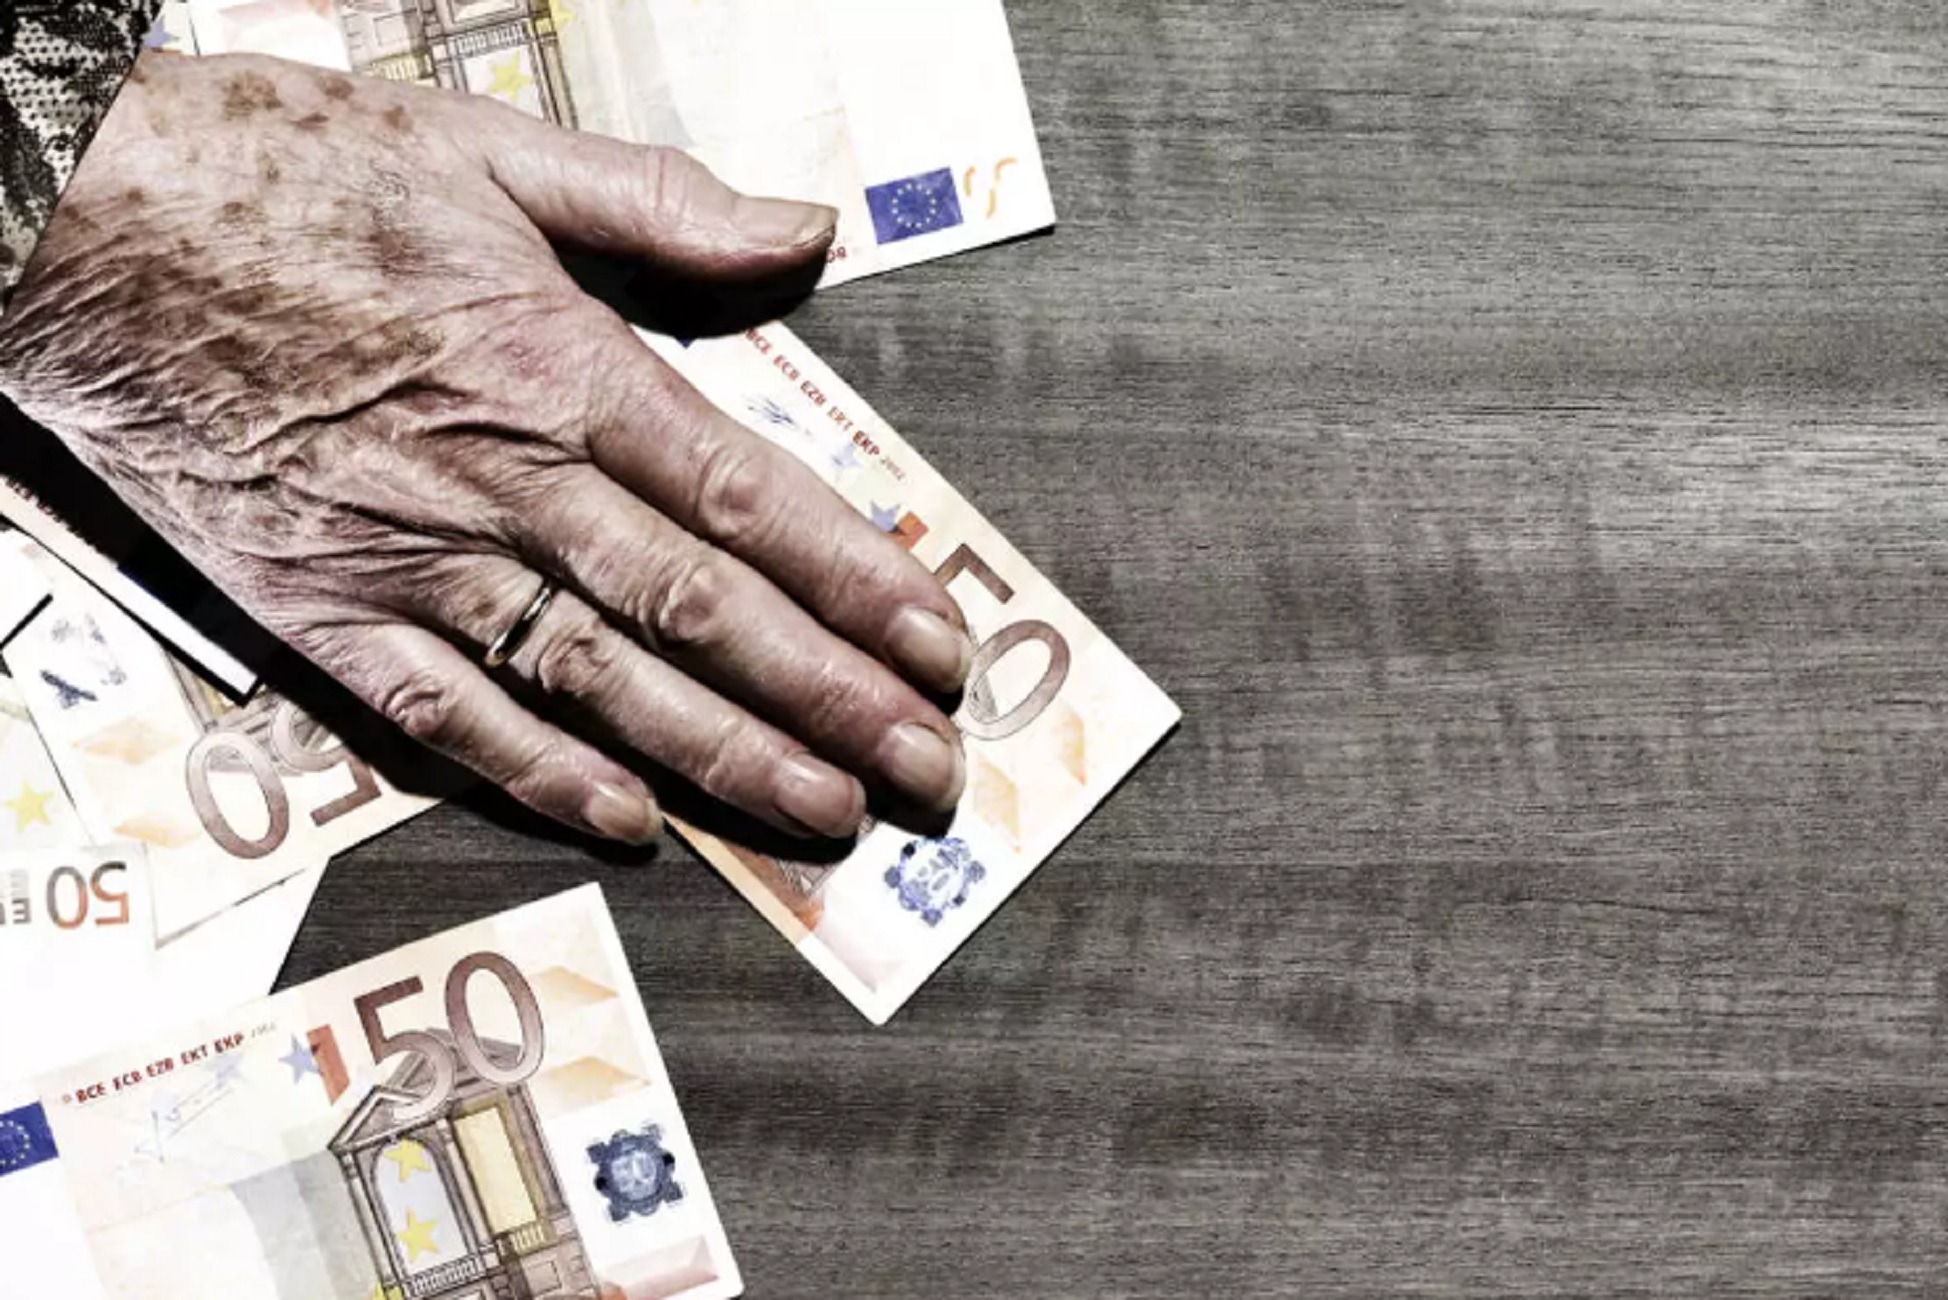 Τηλεφωνική απάτη στην Άρτα: Έδωσε 13.000 ευρώ σε μια γυναίκα που έβλεπε πρώτη φορά